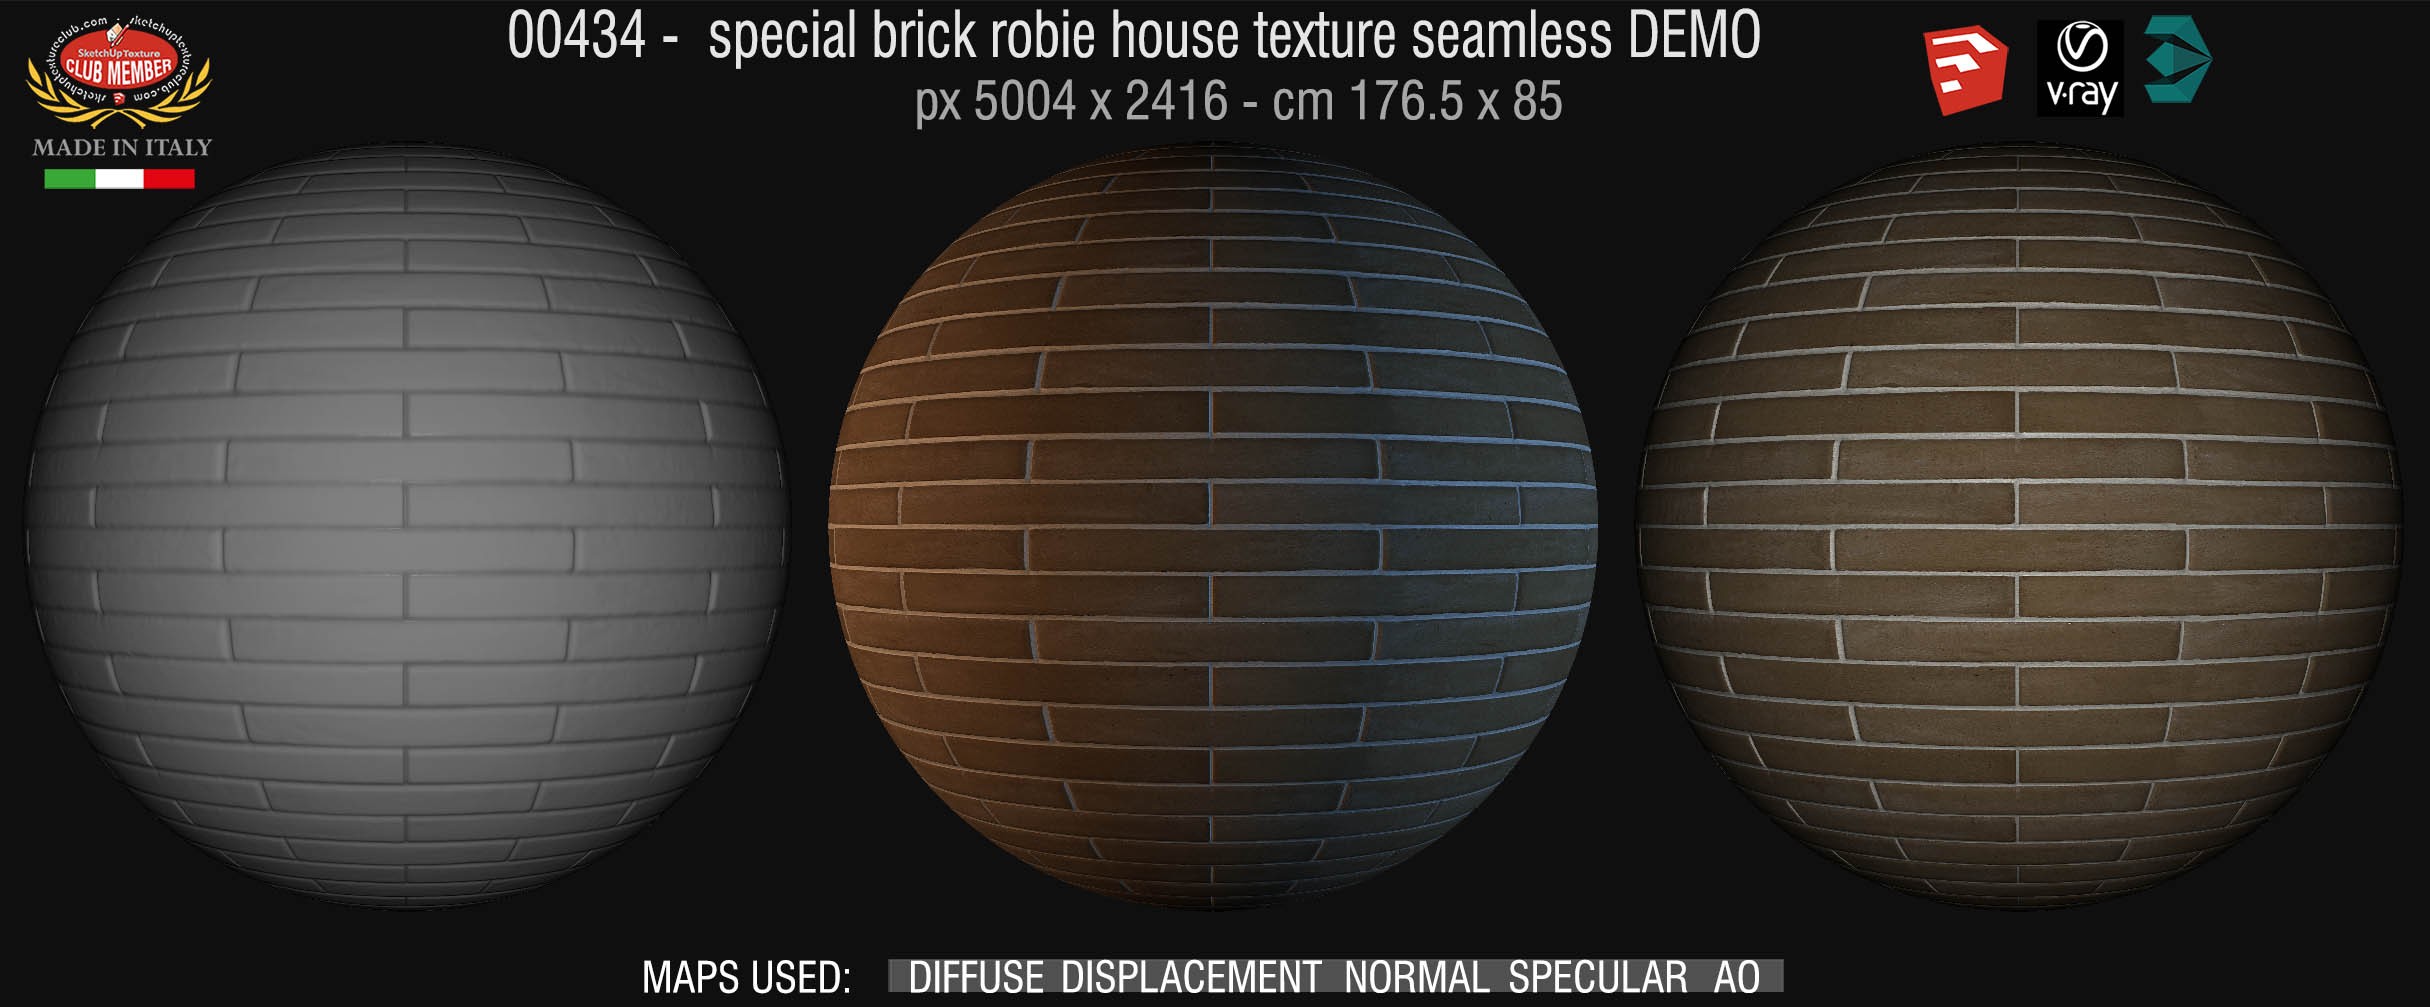 00434 special brick robie house texture seamless + maps DEMO